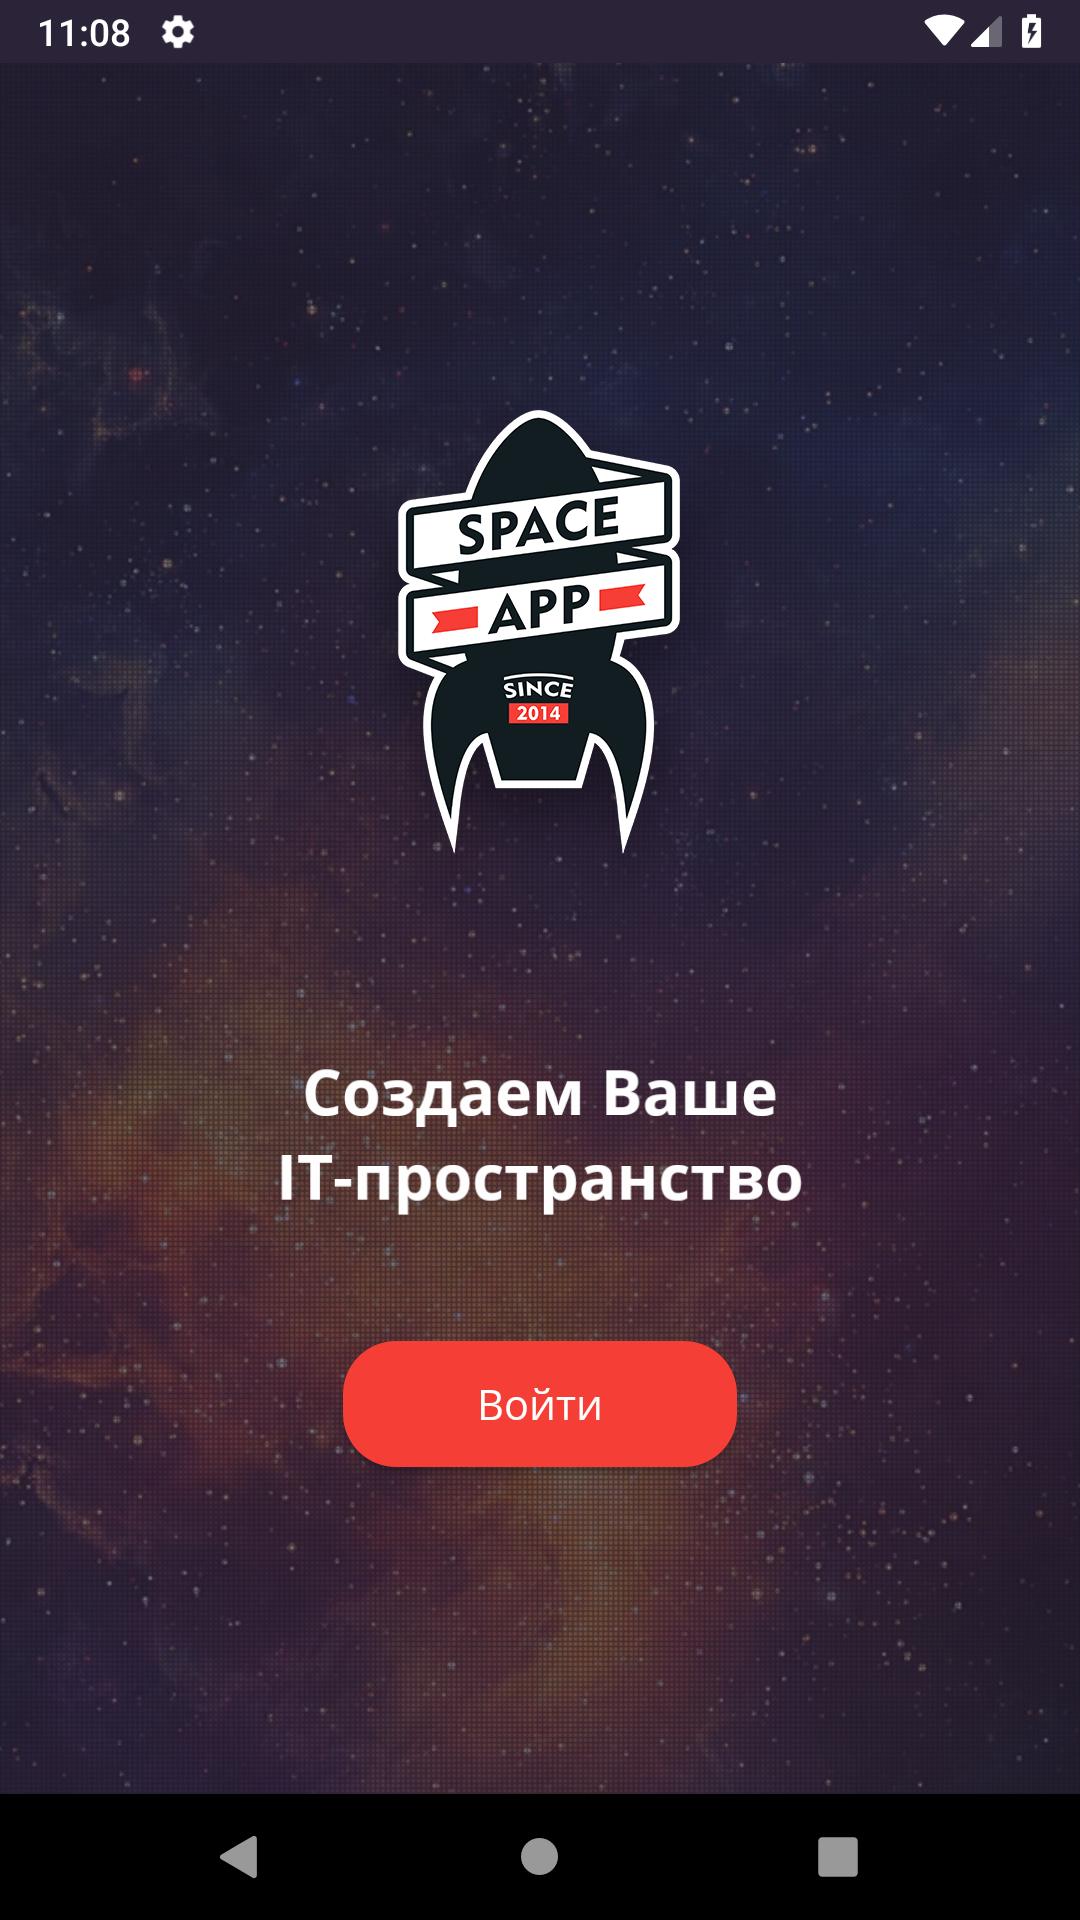 Space 1 приложение. Приложение Space. Space app Саратов. Cosmos приложение. Al Space приложение.